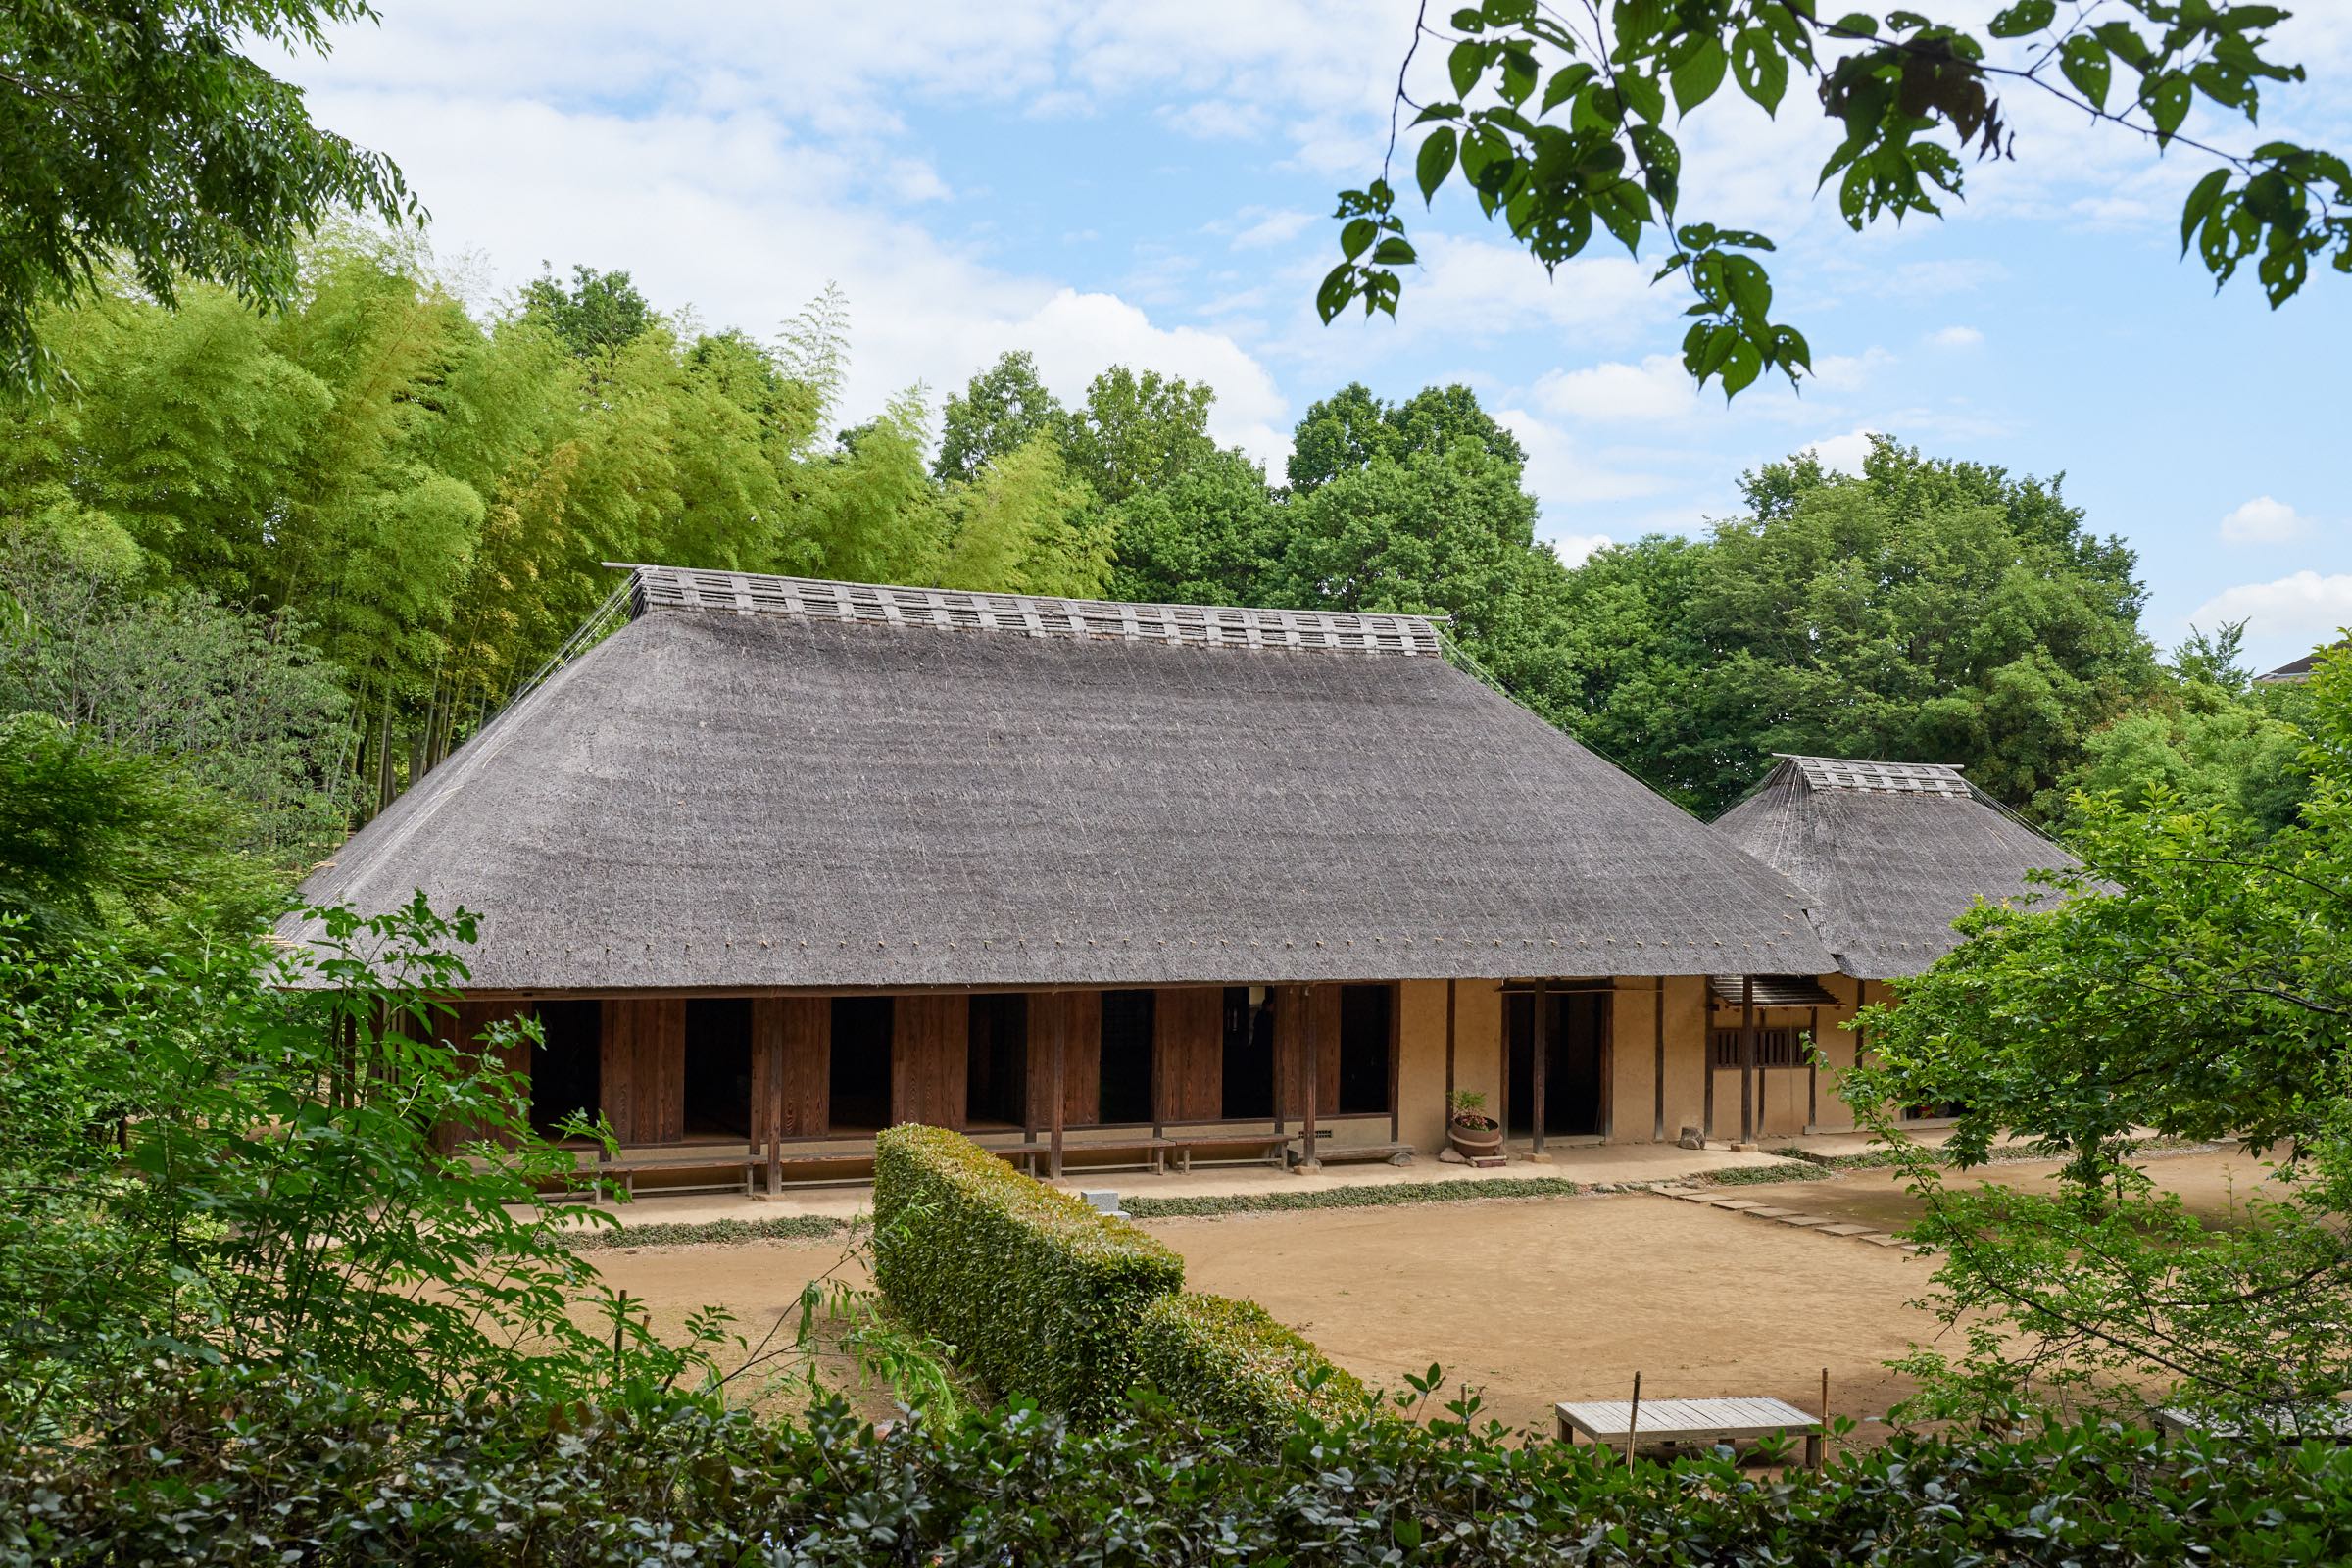 都筑民家園 日本の歴史と文化を感じる 江戸時代の古民家 マグカル